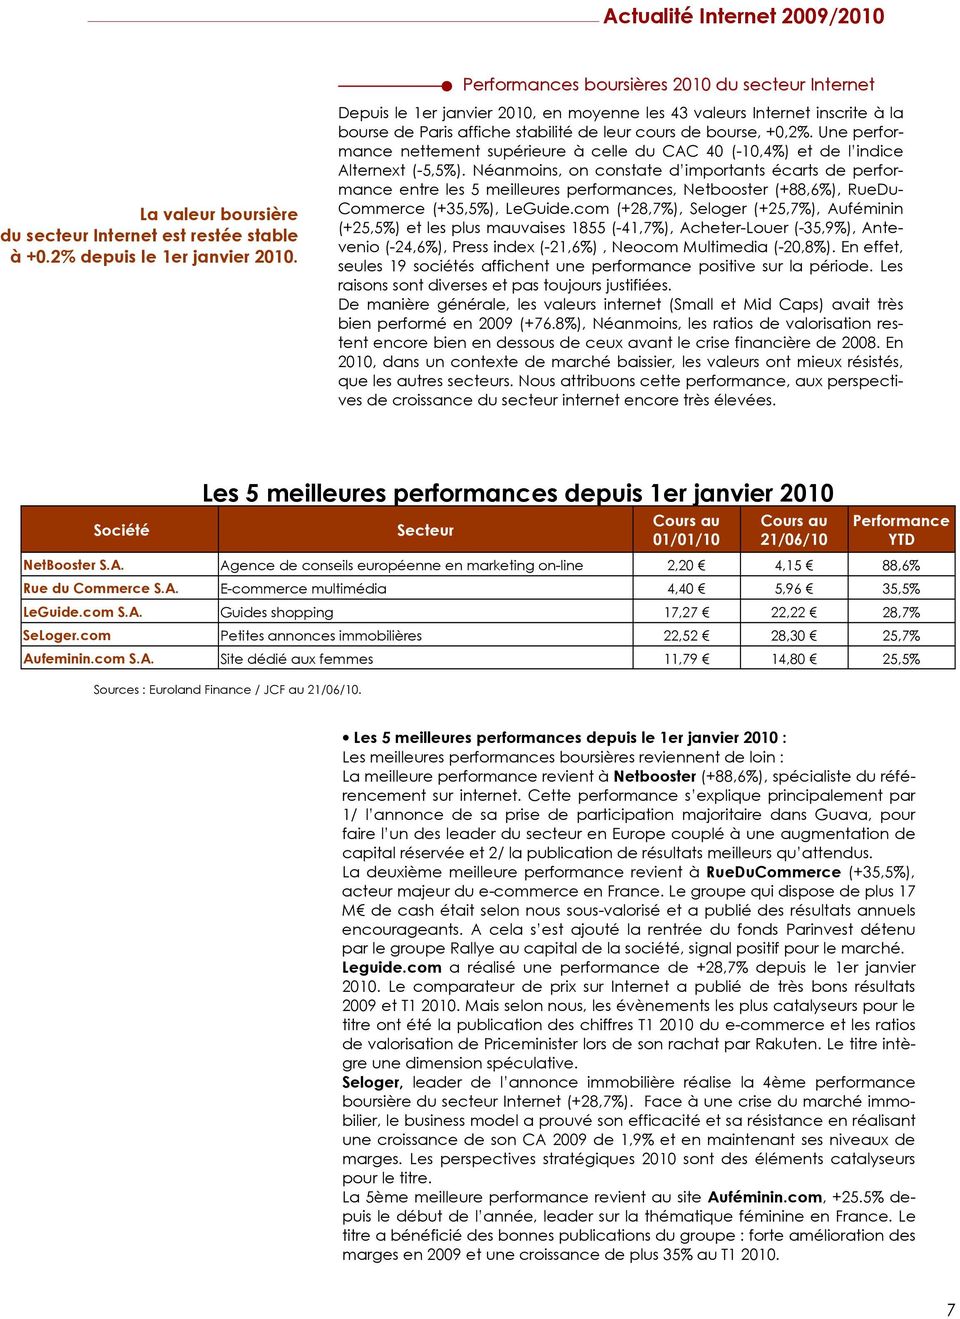 Une performance nettement supérieure à celle du CAC 40 (-10,4%) et de l indice Alternext (-5,5%).